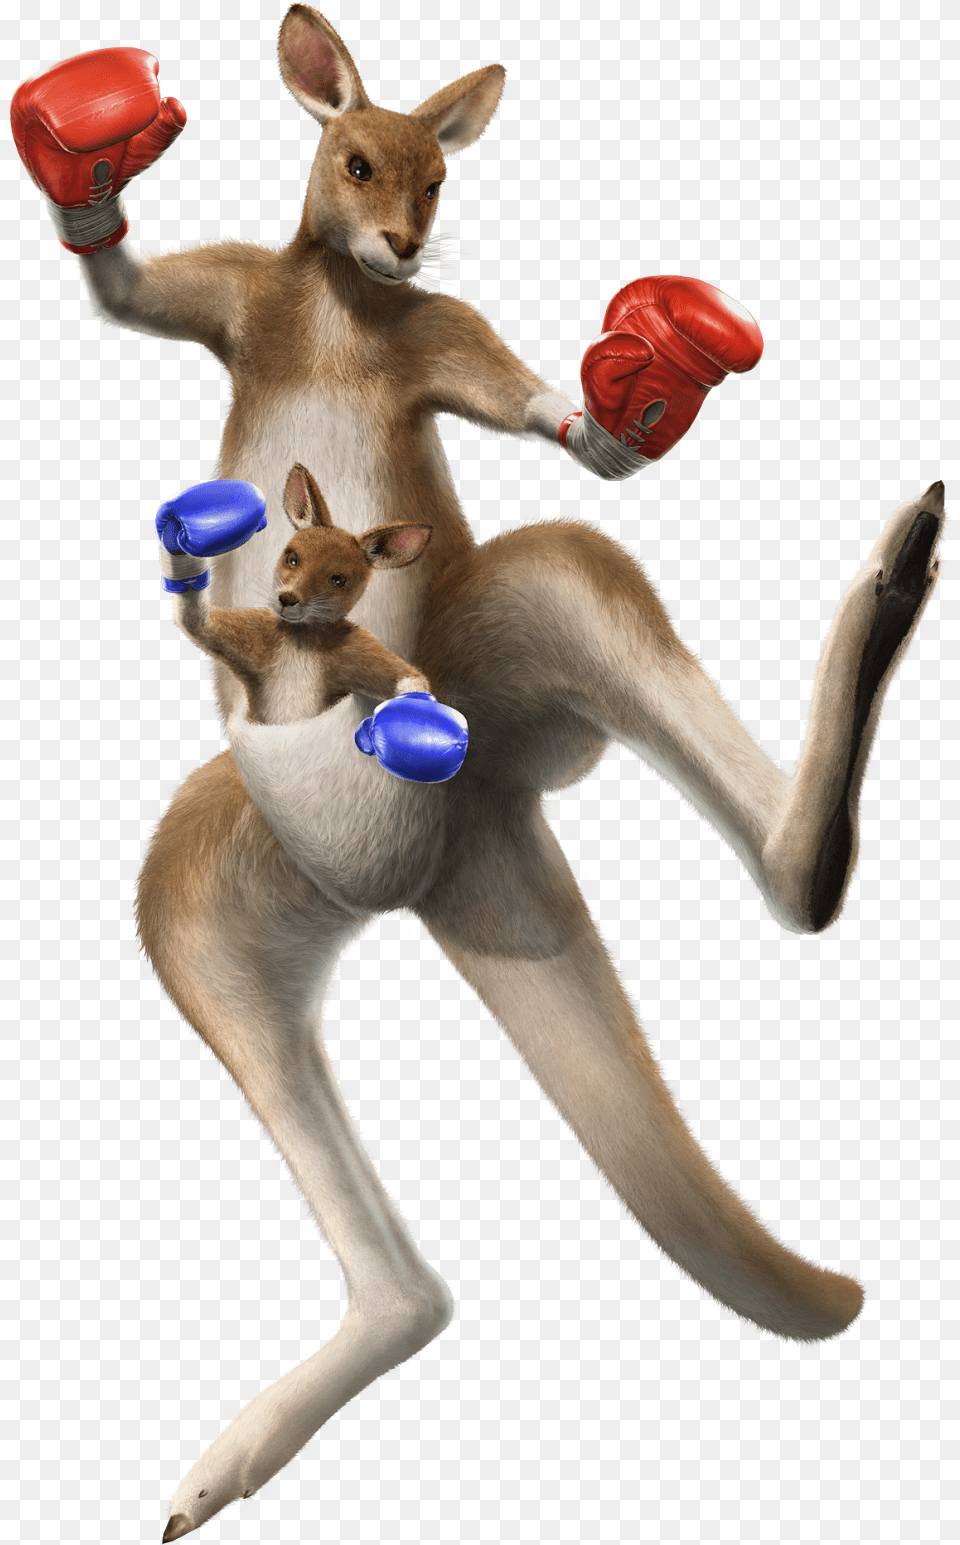 Tekken Tag Tournament 2 Roger, Clothing, Glove, Animal, Kangaroo Png Image